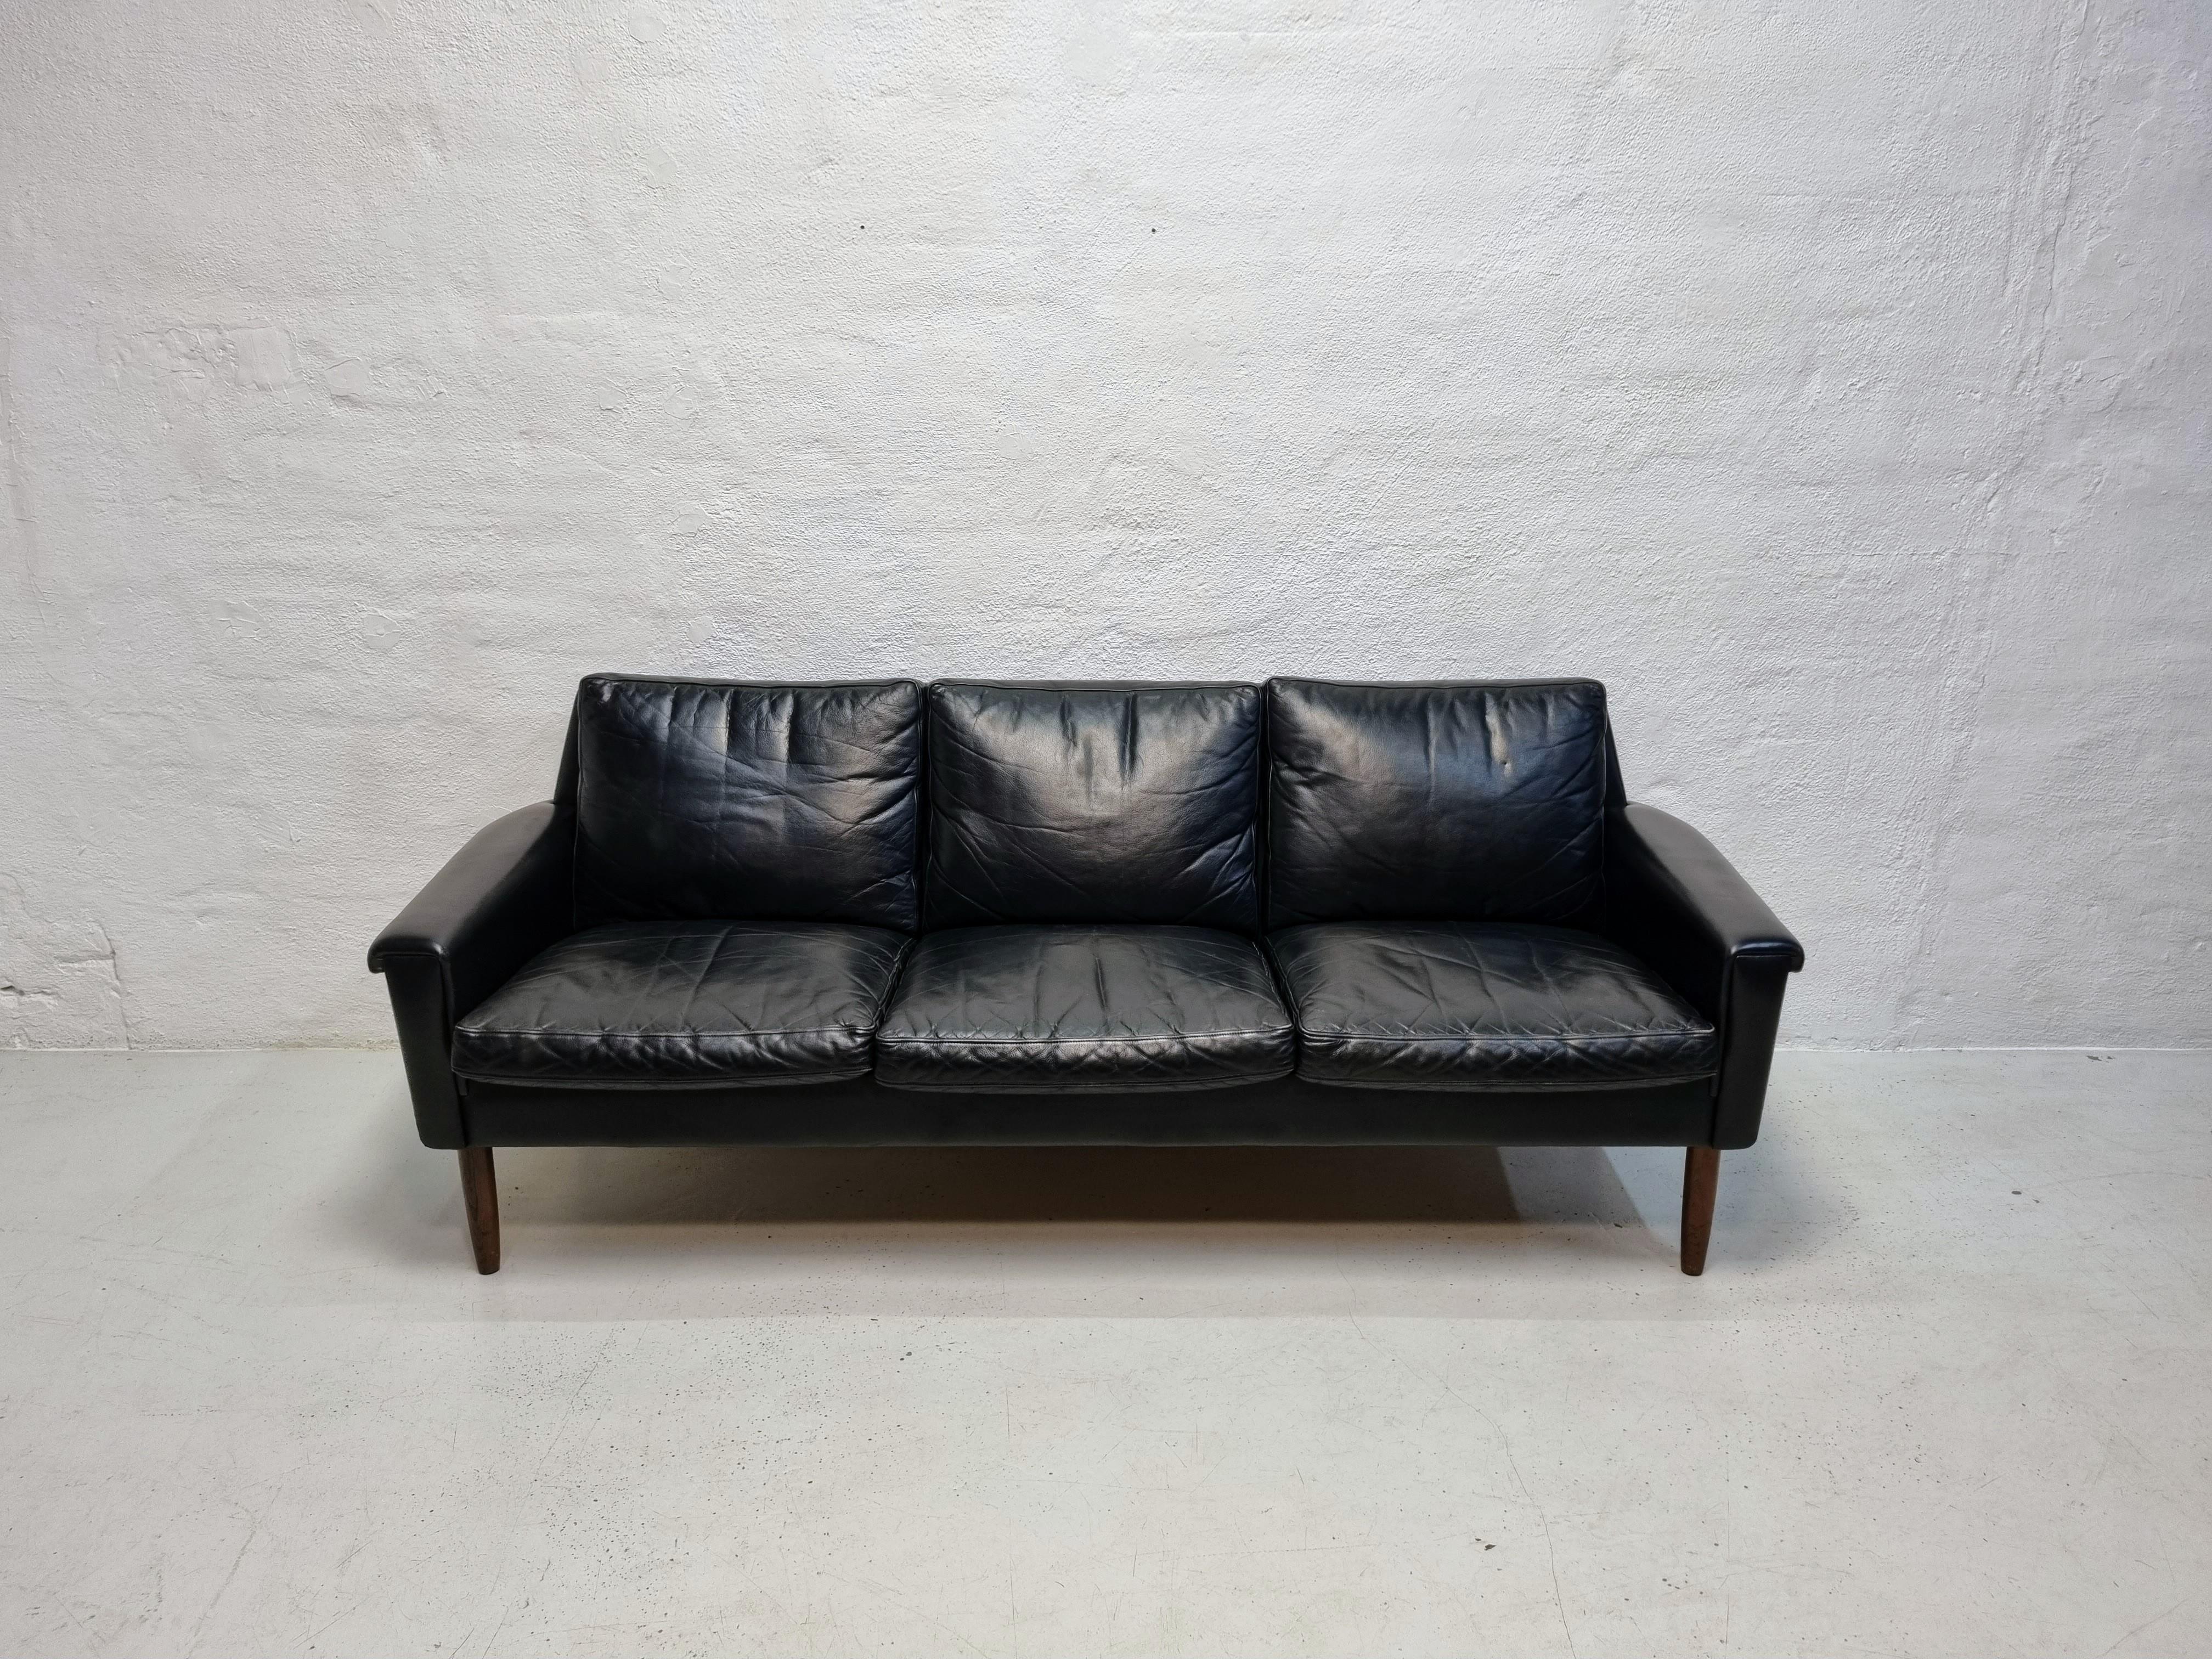 Schwarzes Ledersofa auf Beinen aus Palisanderholz, 3-Sitzer.
Das Sofa wird Georg Thams zugeschrieben und von der Vejen møbelfabrik hergestellt.
Ein schönes und stilvolles Sofa mit sehr gutem Sitzkomfort.